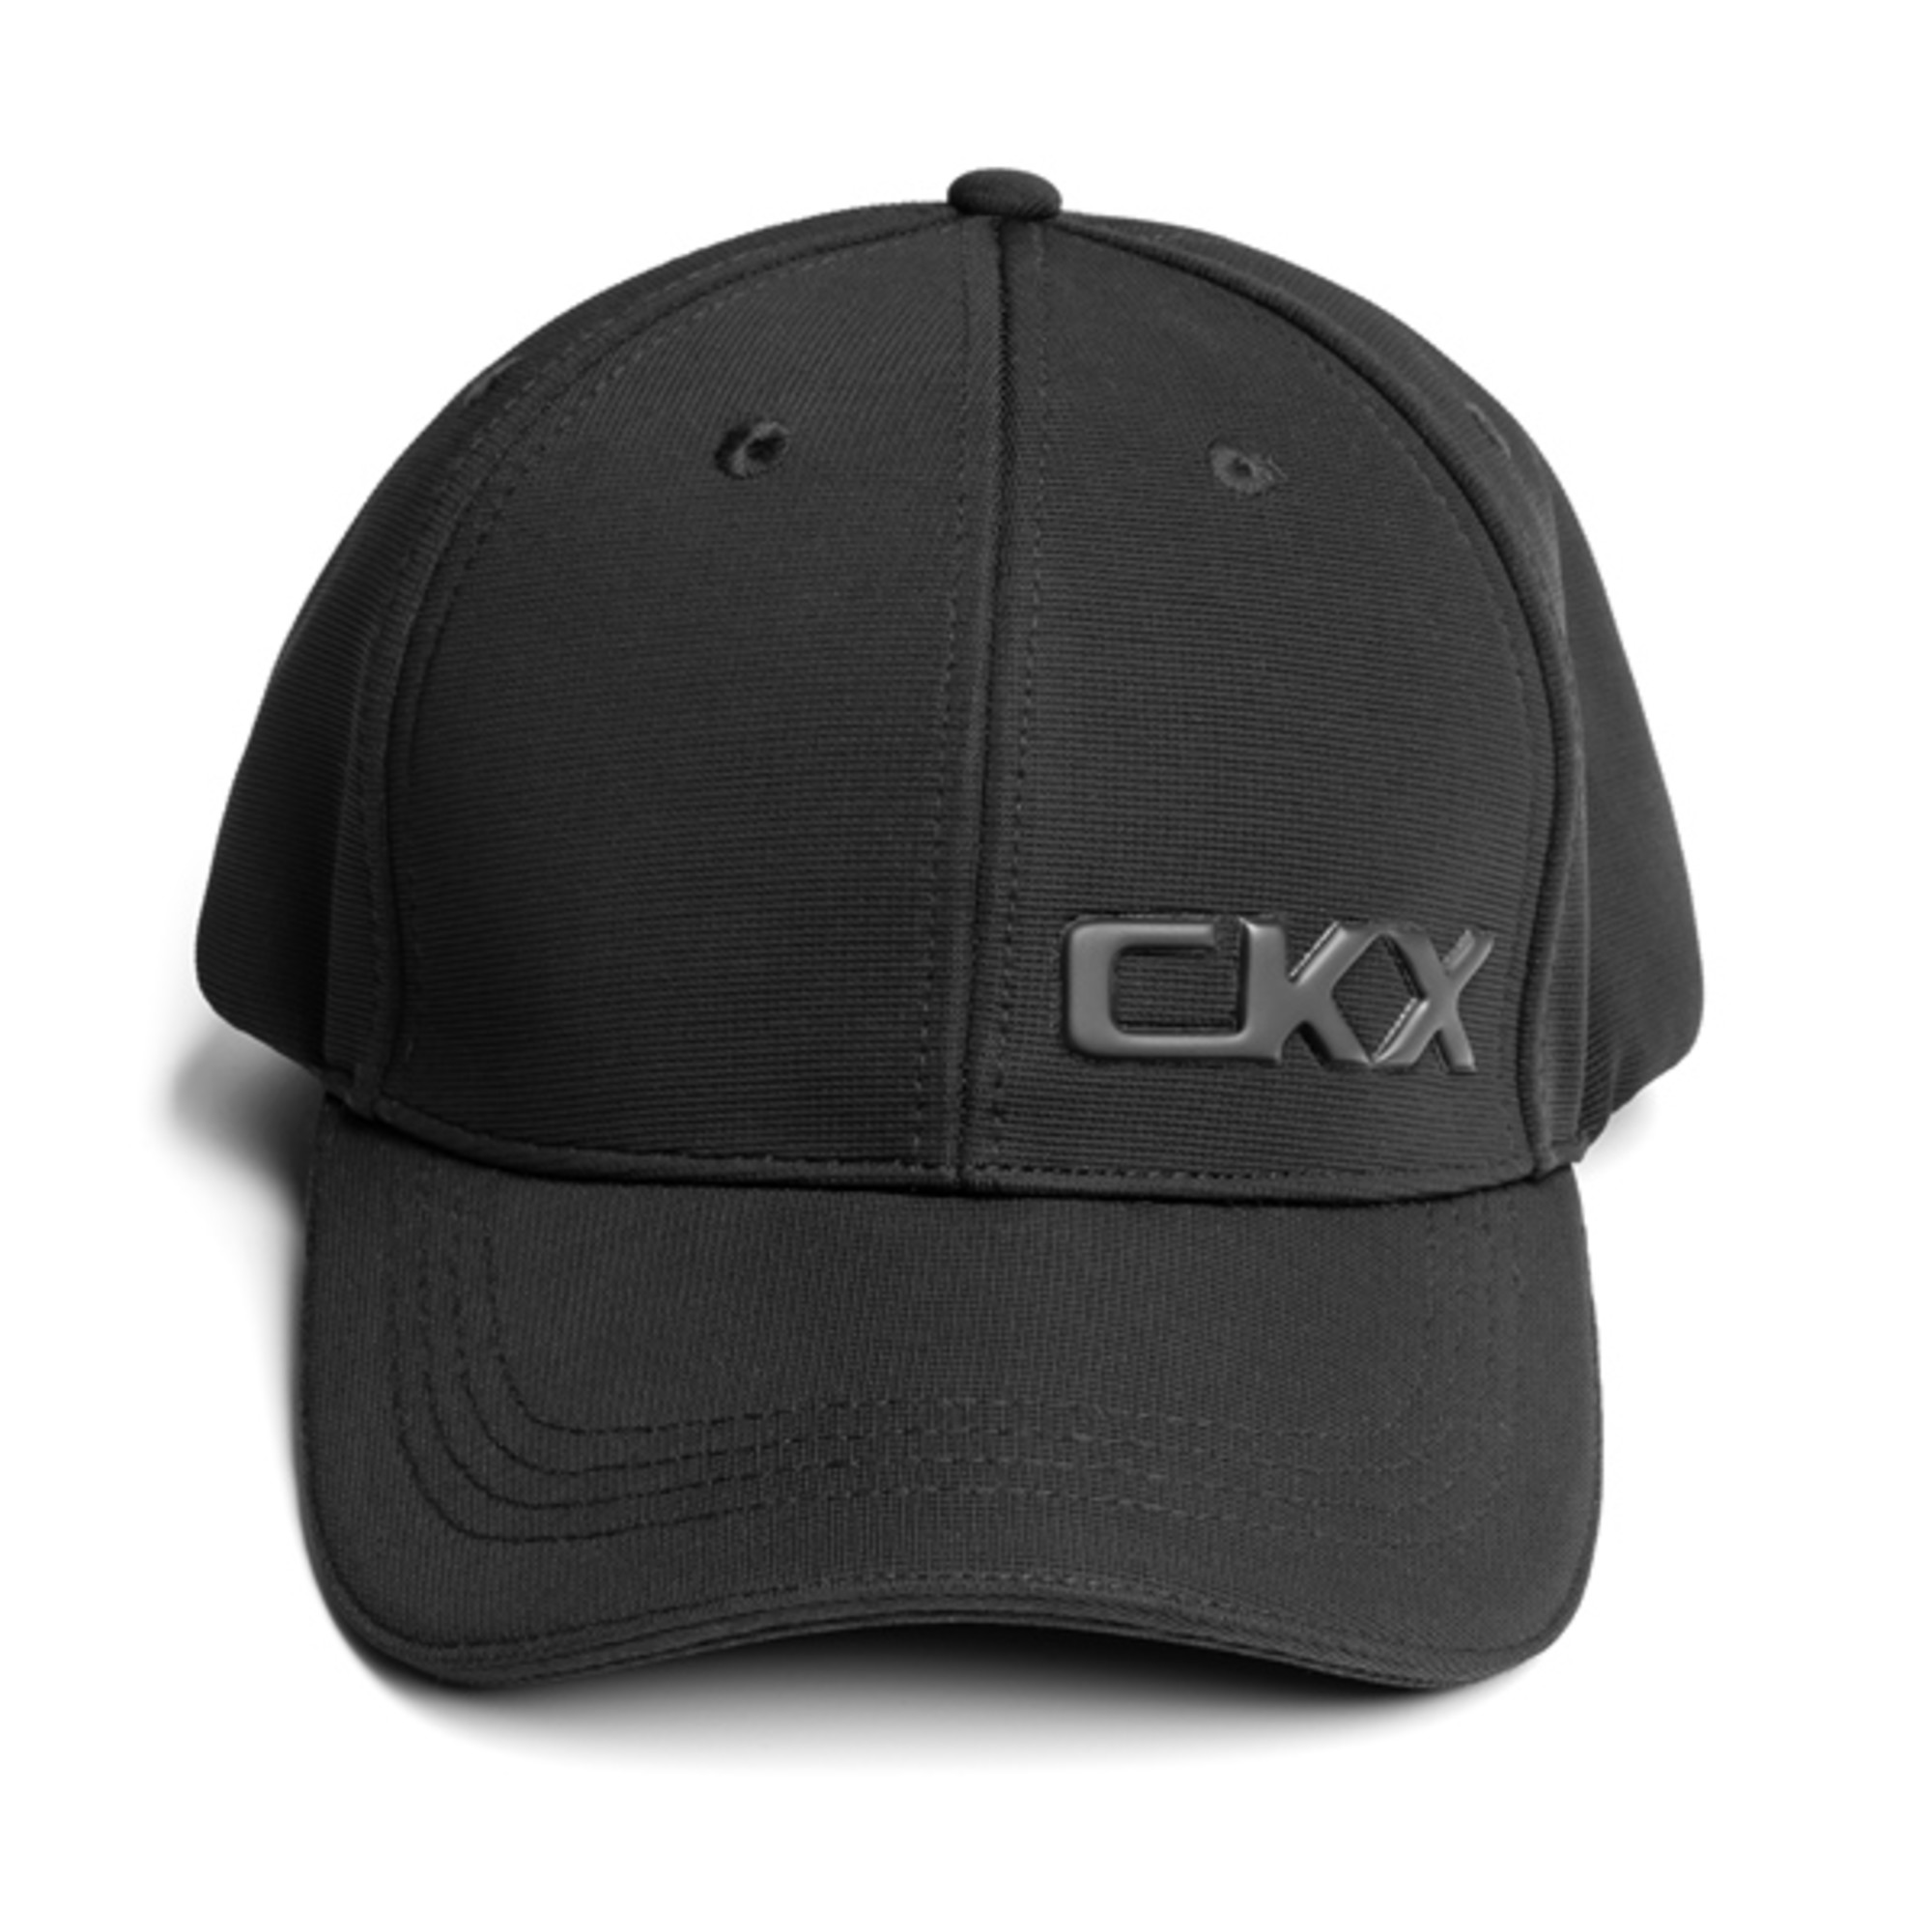 mode hommes casquettes snapback par ckx adult logo